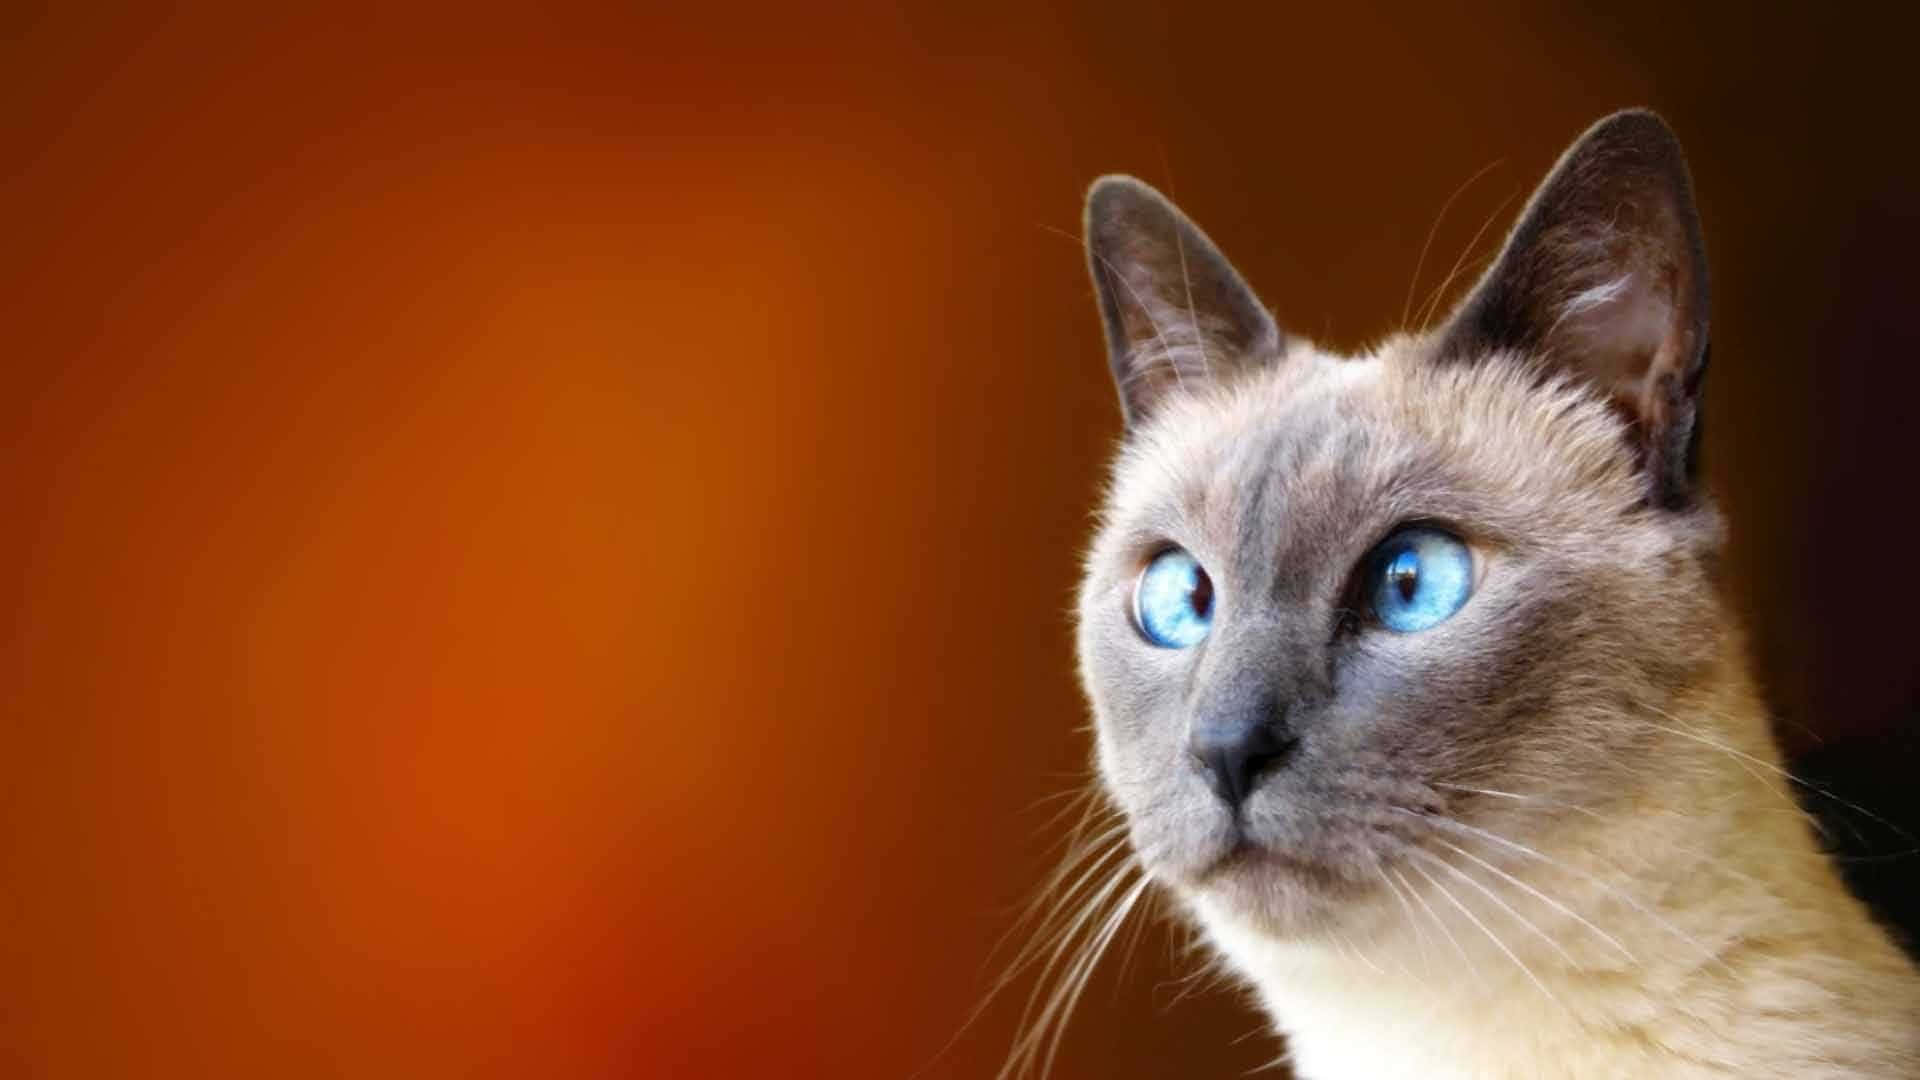 Konstigbild Av Siamesisk Katt Med Korsade Ögon Som Bakgrundsbild.